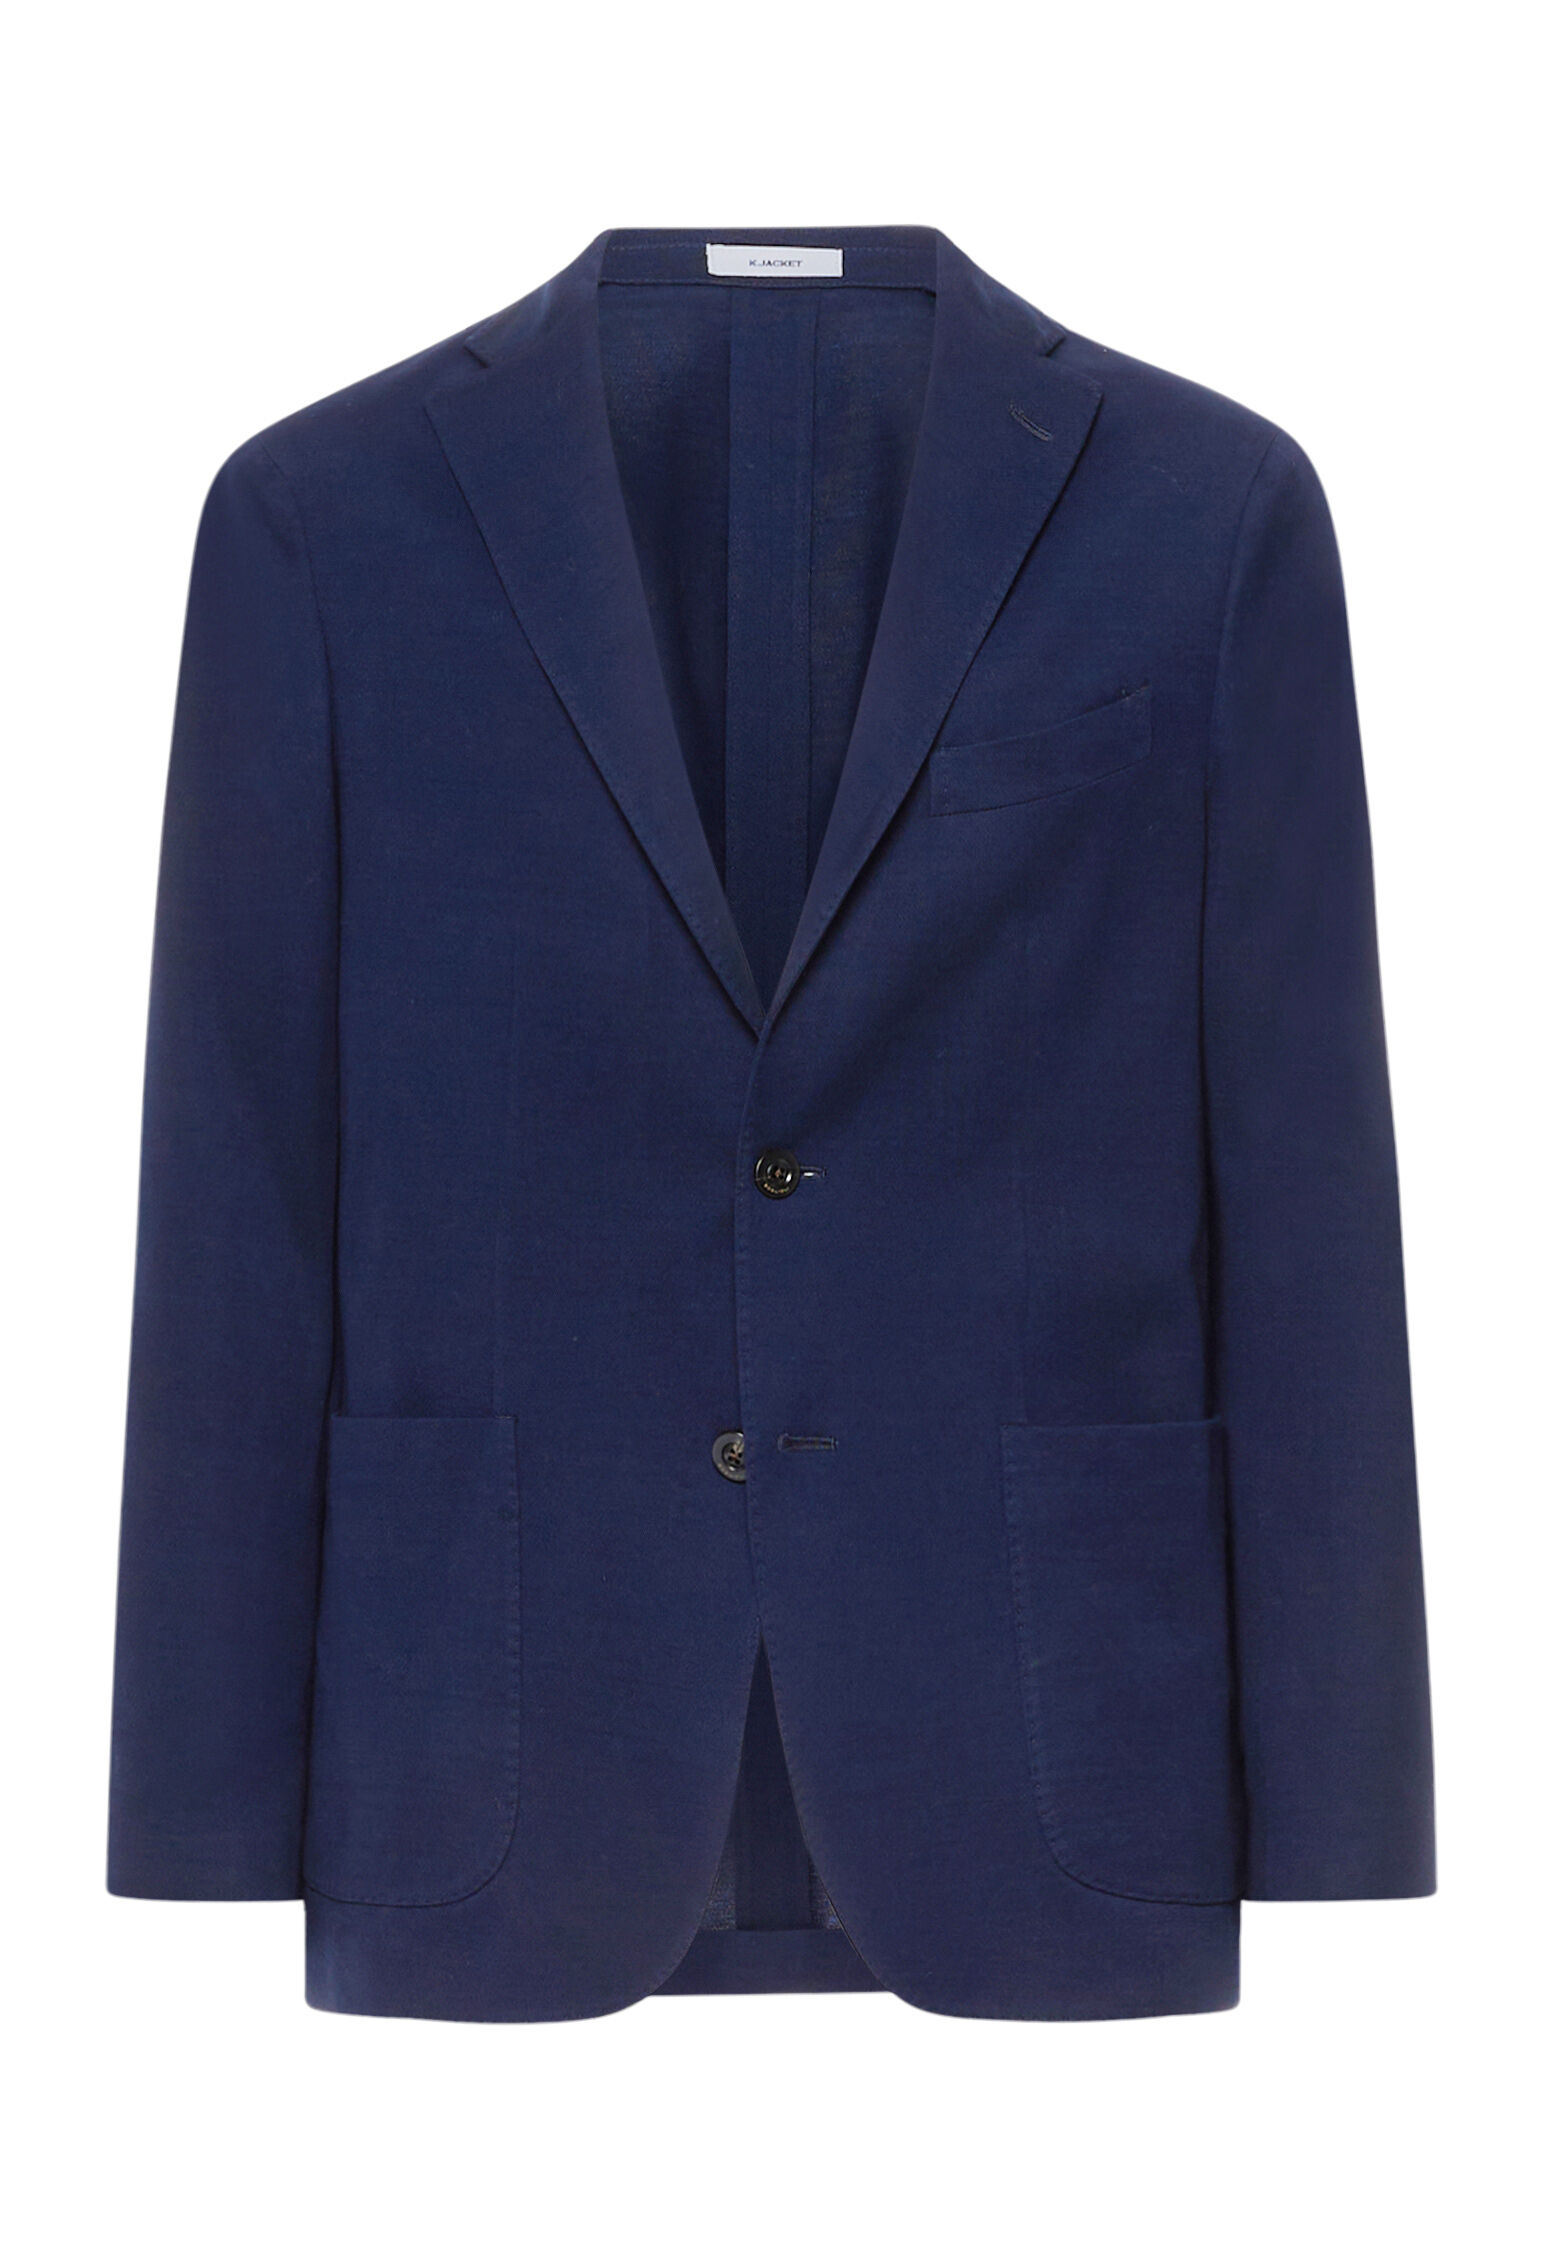 Dark blue 100% cotton jersey K-Jacket